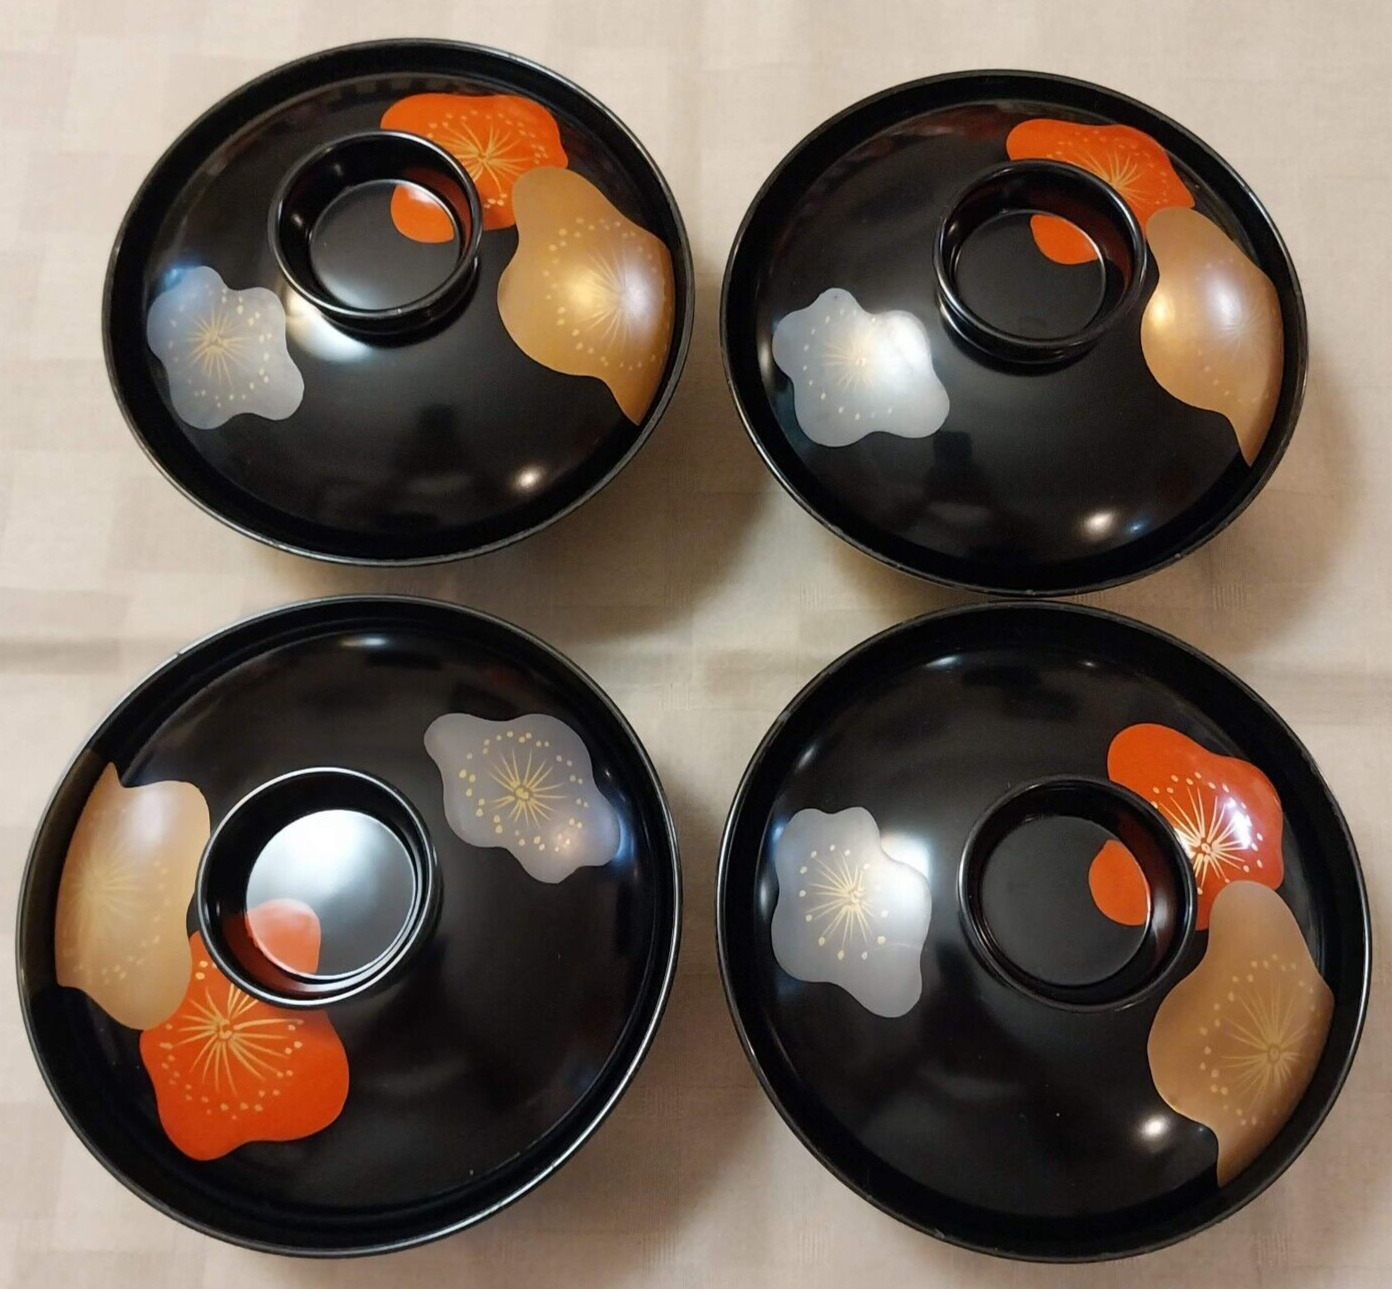 Vintage Black Lacquered Japanese Rice Bowls w/Lids. Set of 4. Flower Design